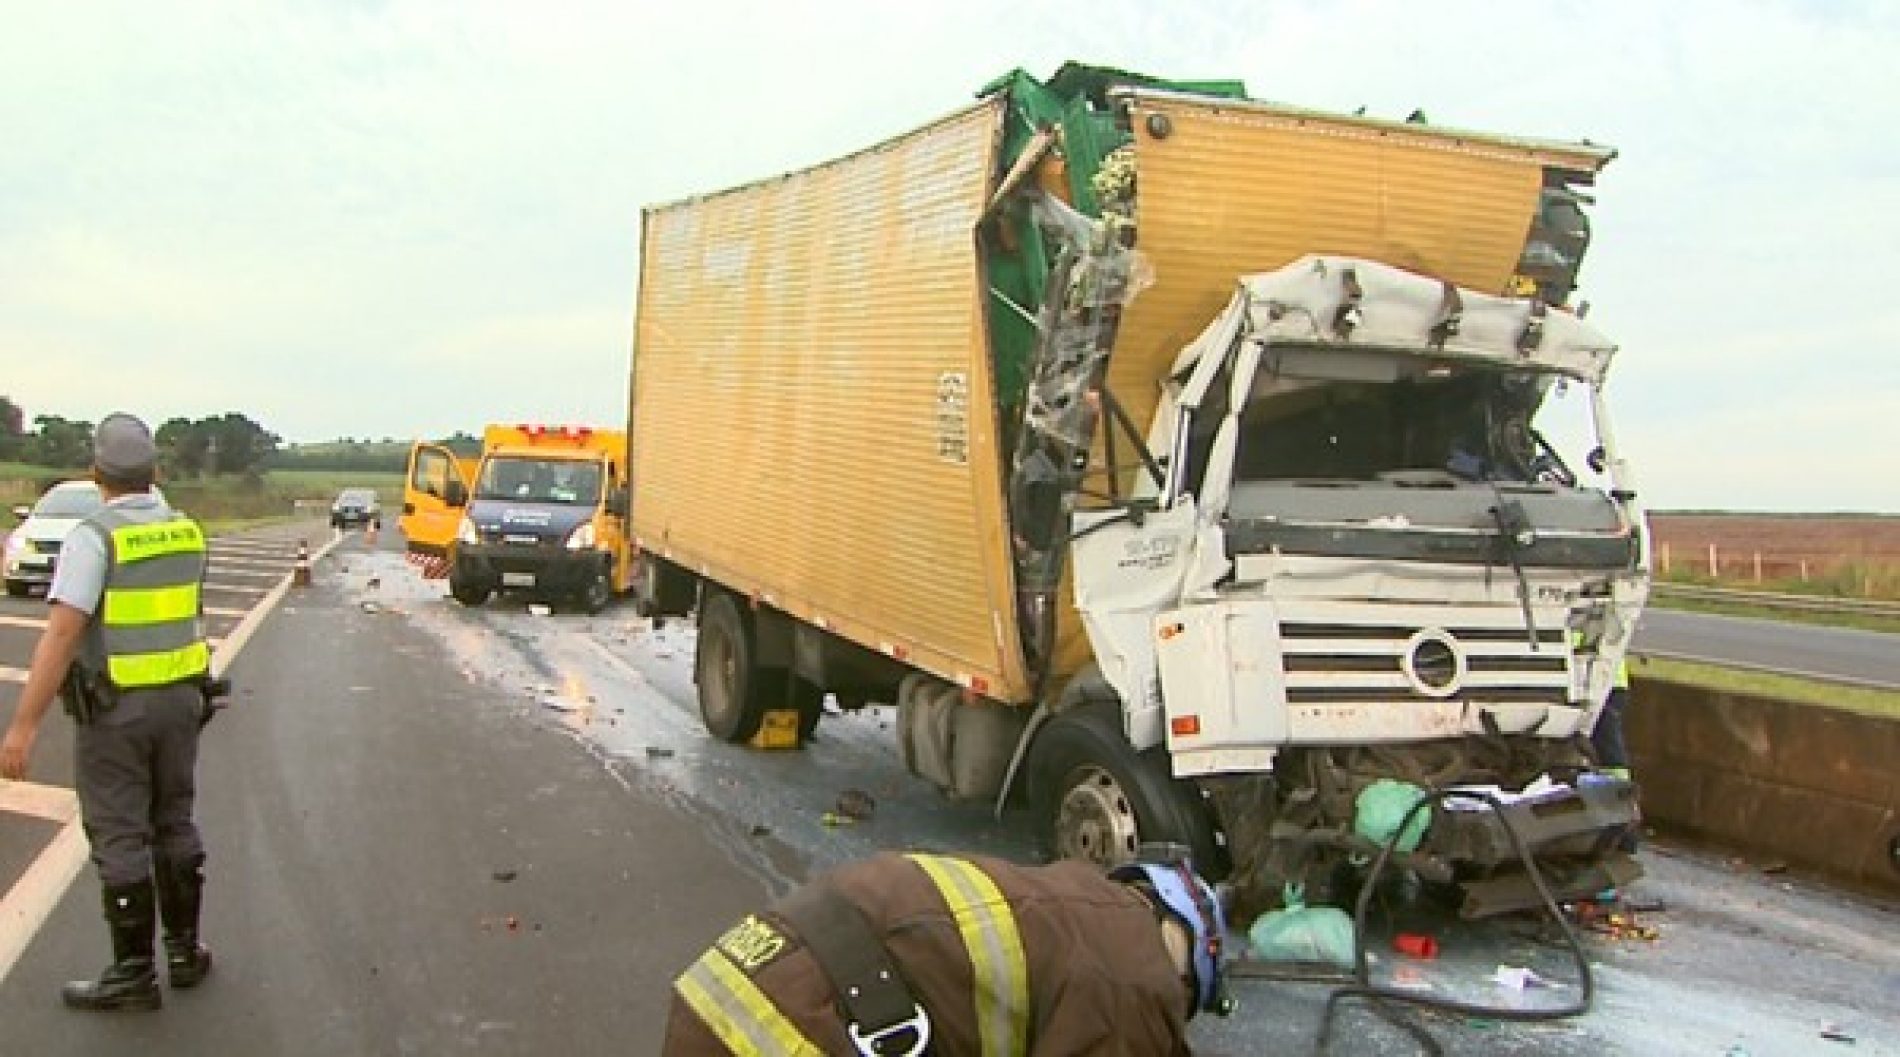 REGIÃO: Morre motorista envolvido em acidente com carreta na Rodovia Anhanguera